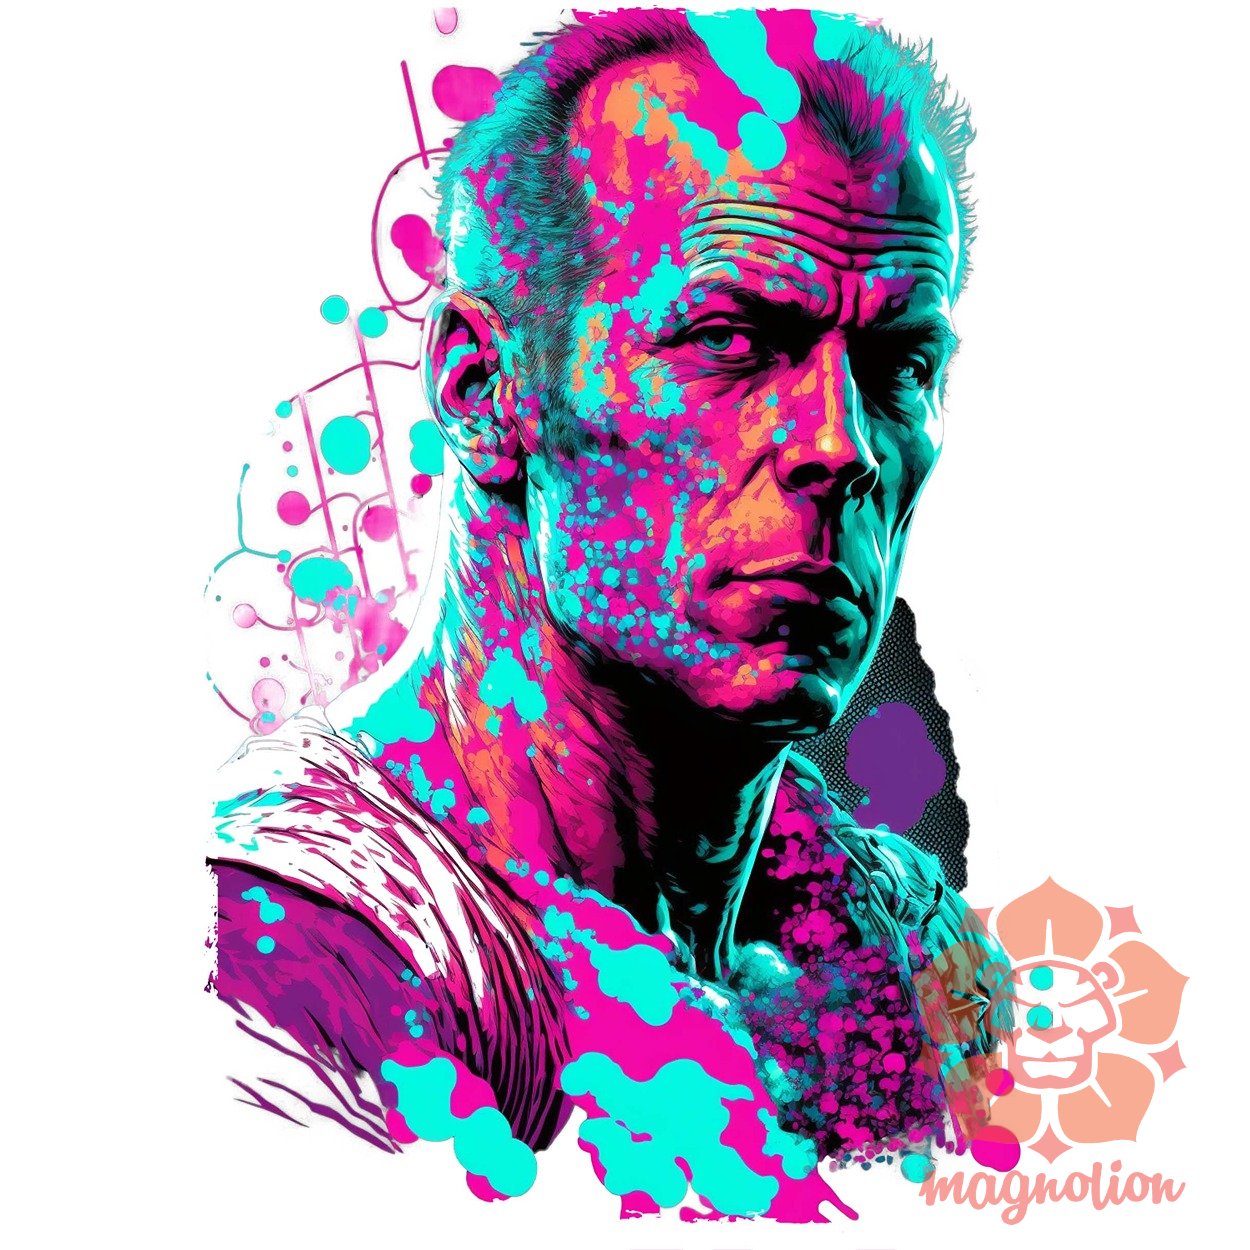 John McClane portré fanart v2